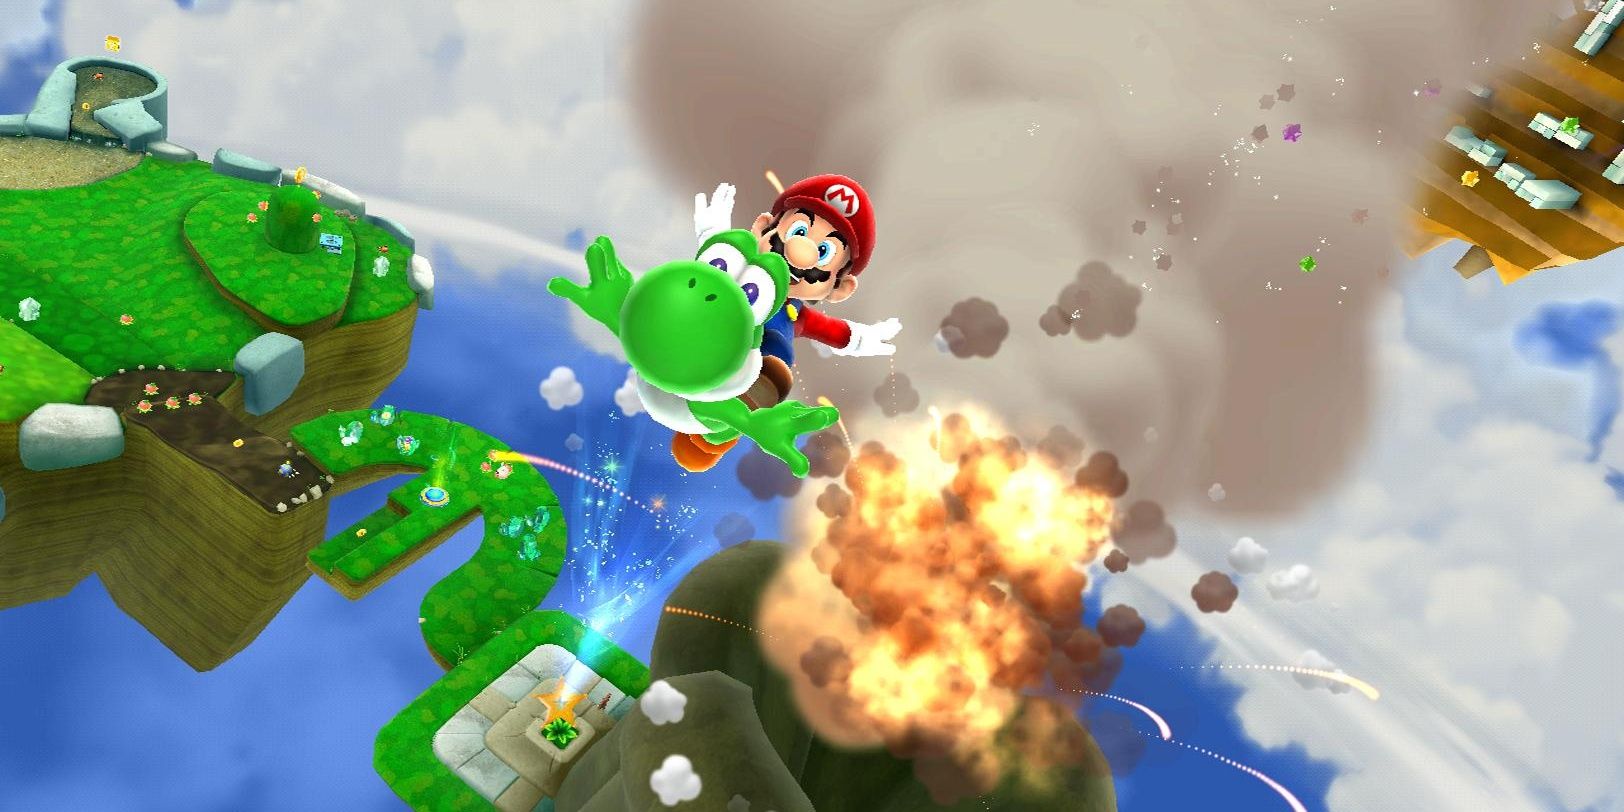 Mario and Yoshi blasting into orbit with explosion in Super Mario Galaxy 2